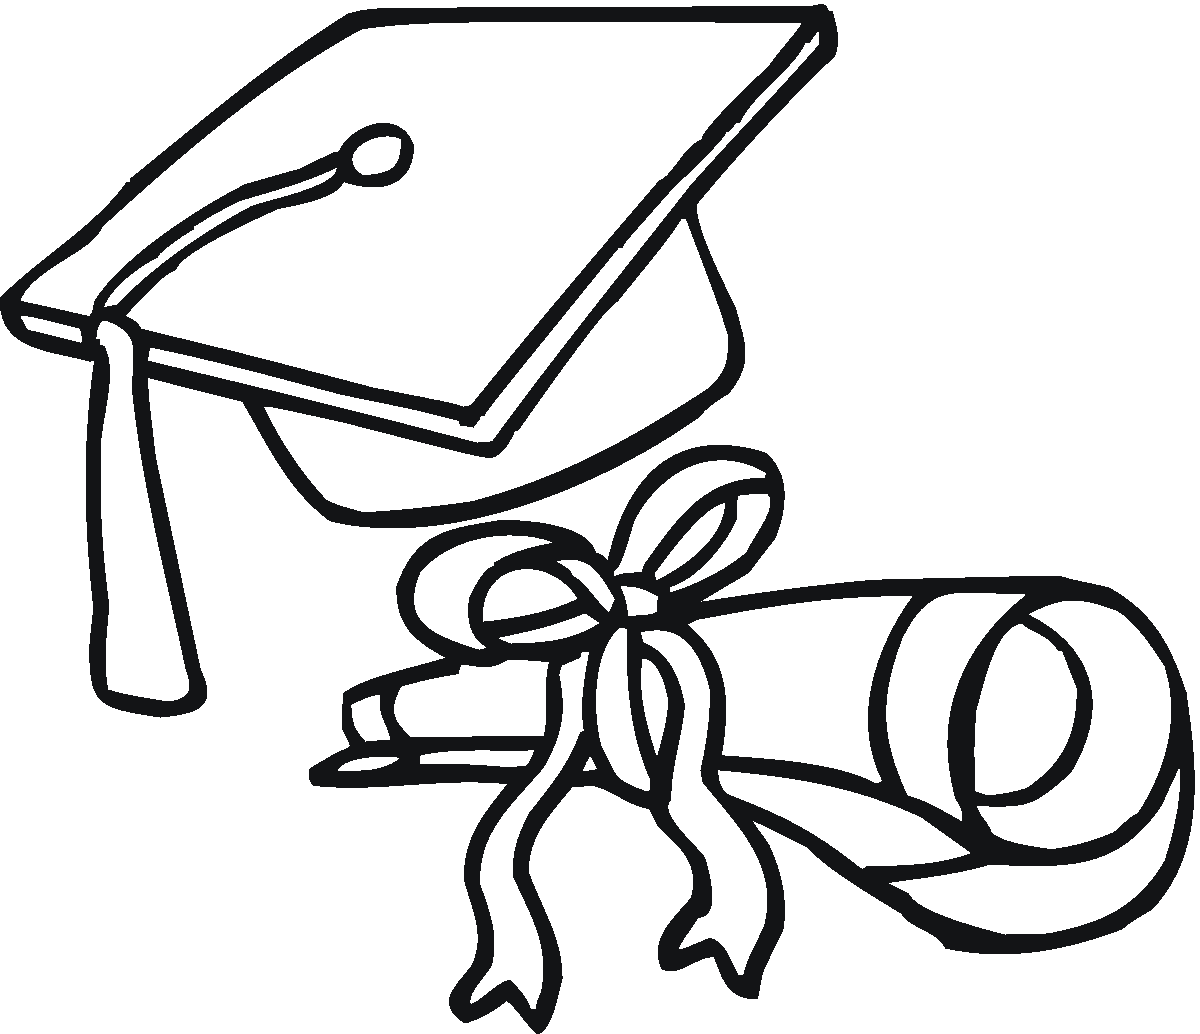 Graduation Cap Drawing | Free Download Clip Art | Free Clip Art ...